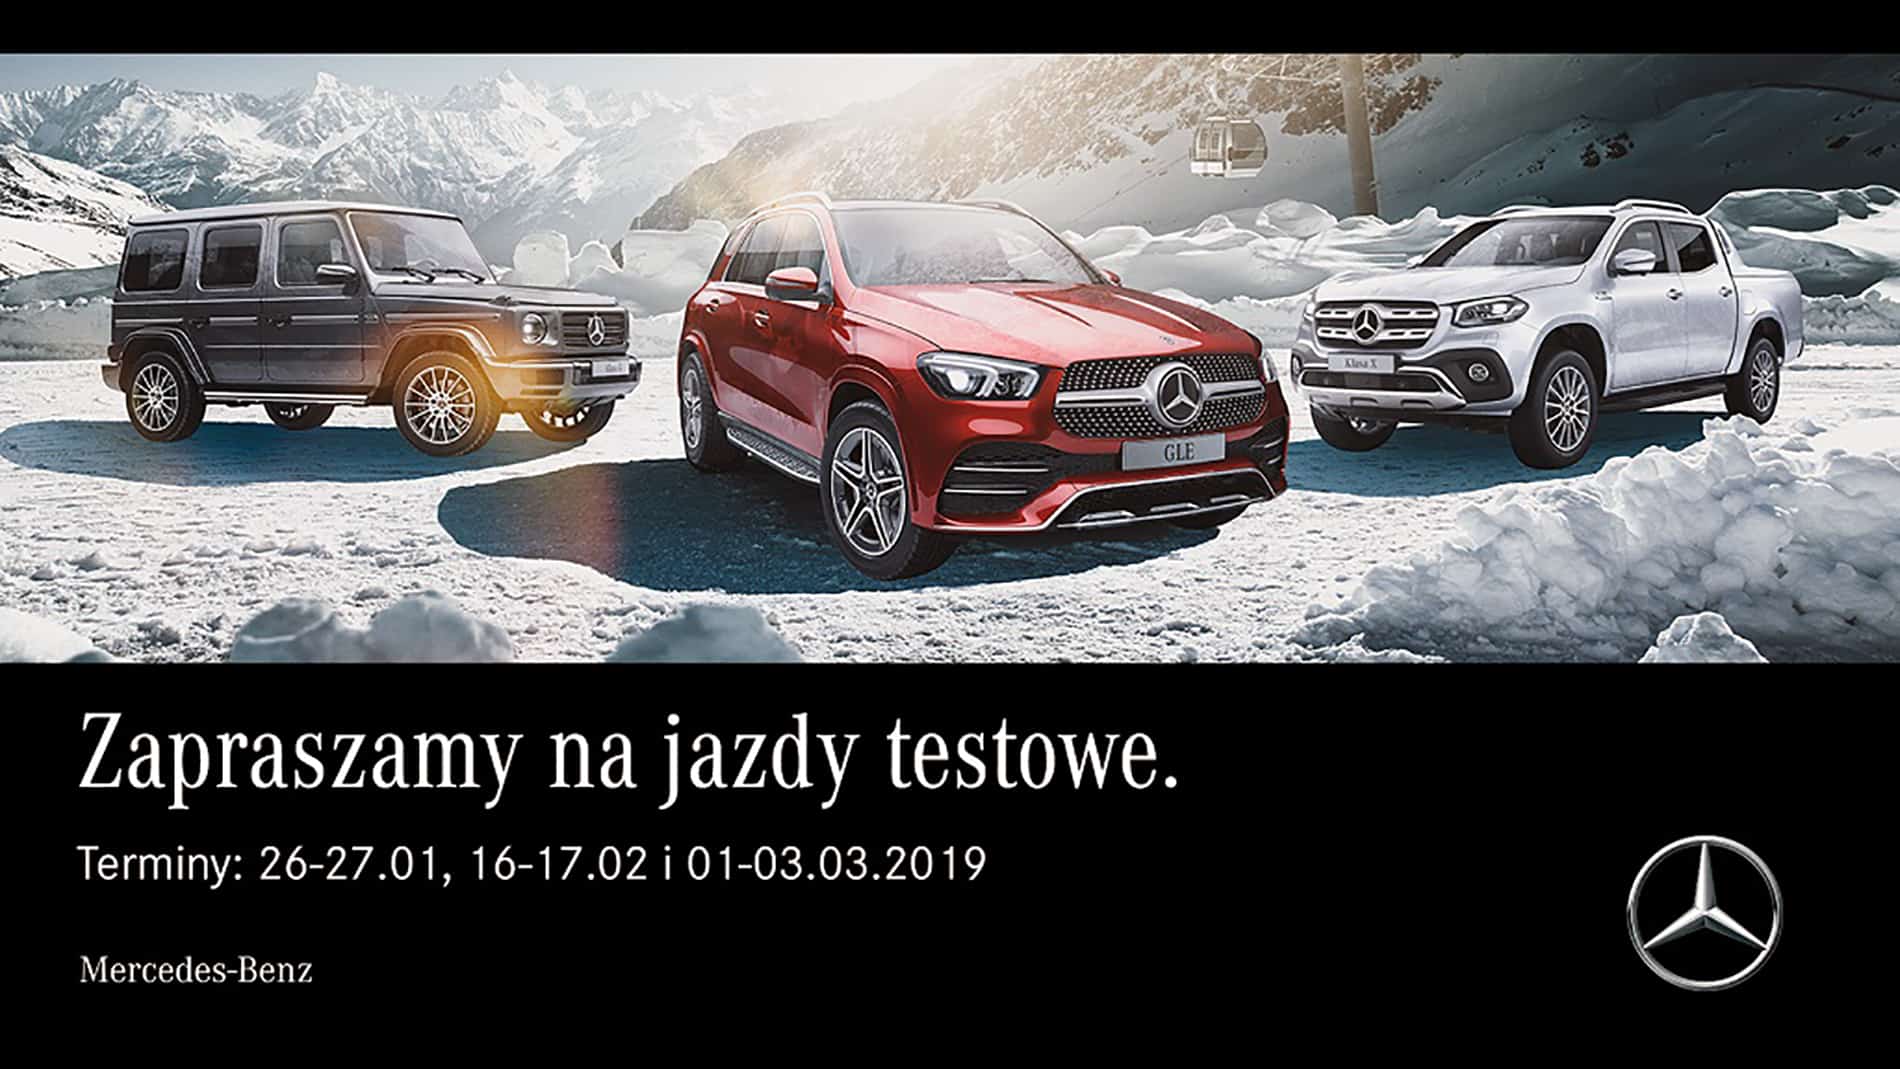 Mercedes-Benz wspiera rodzinny zimowy wypoczynek